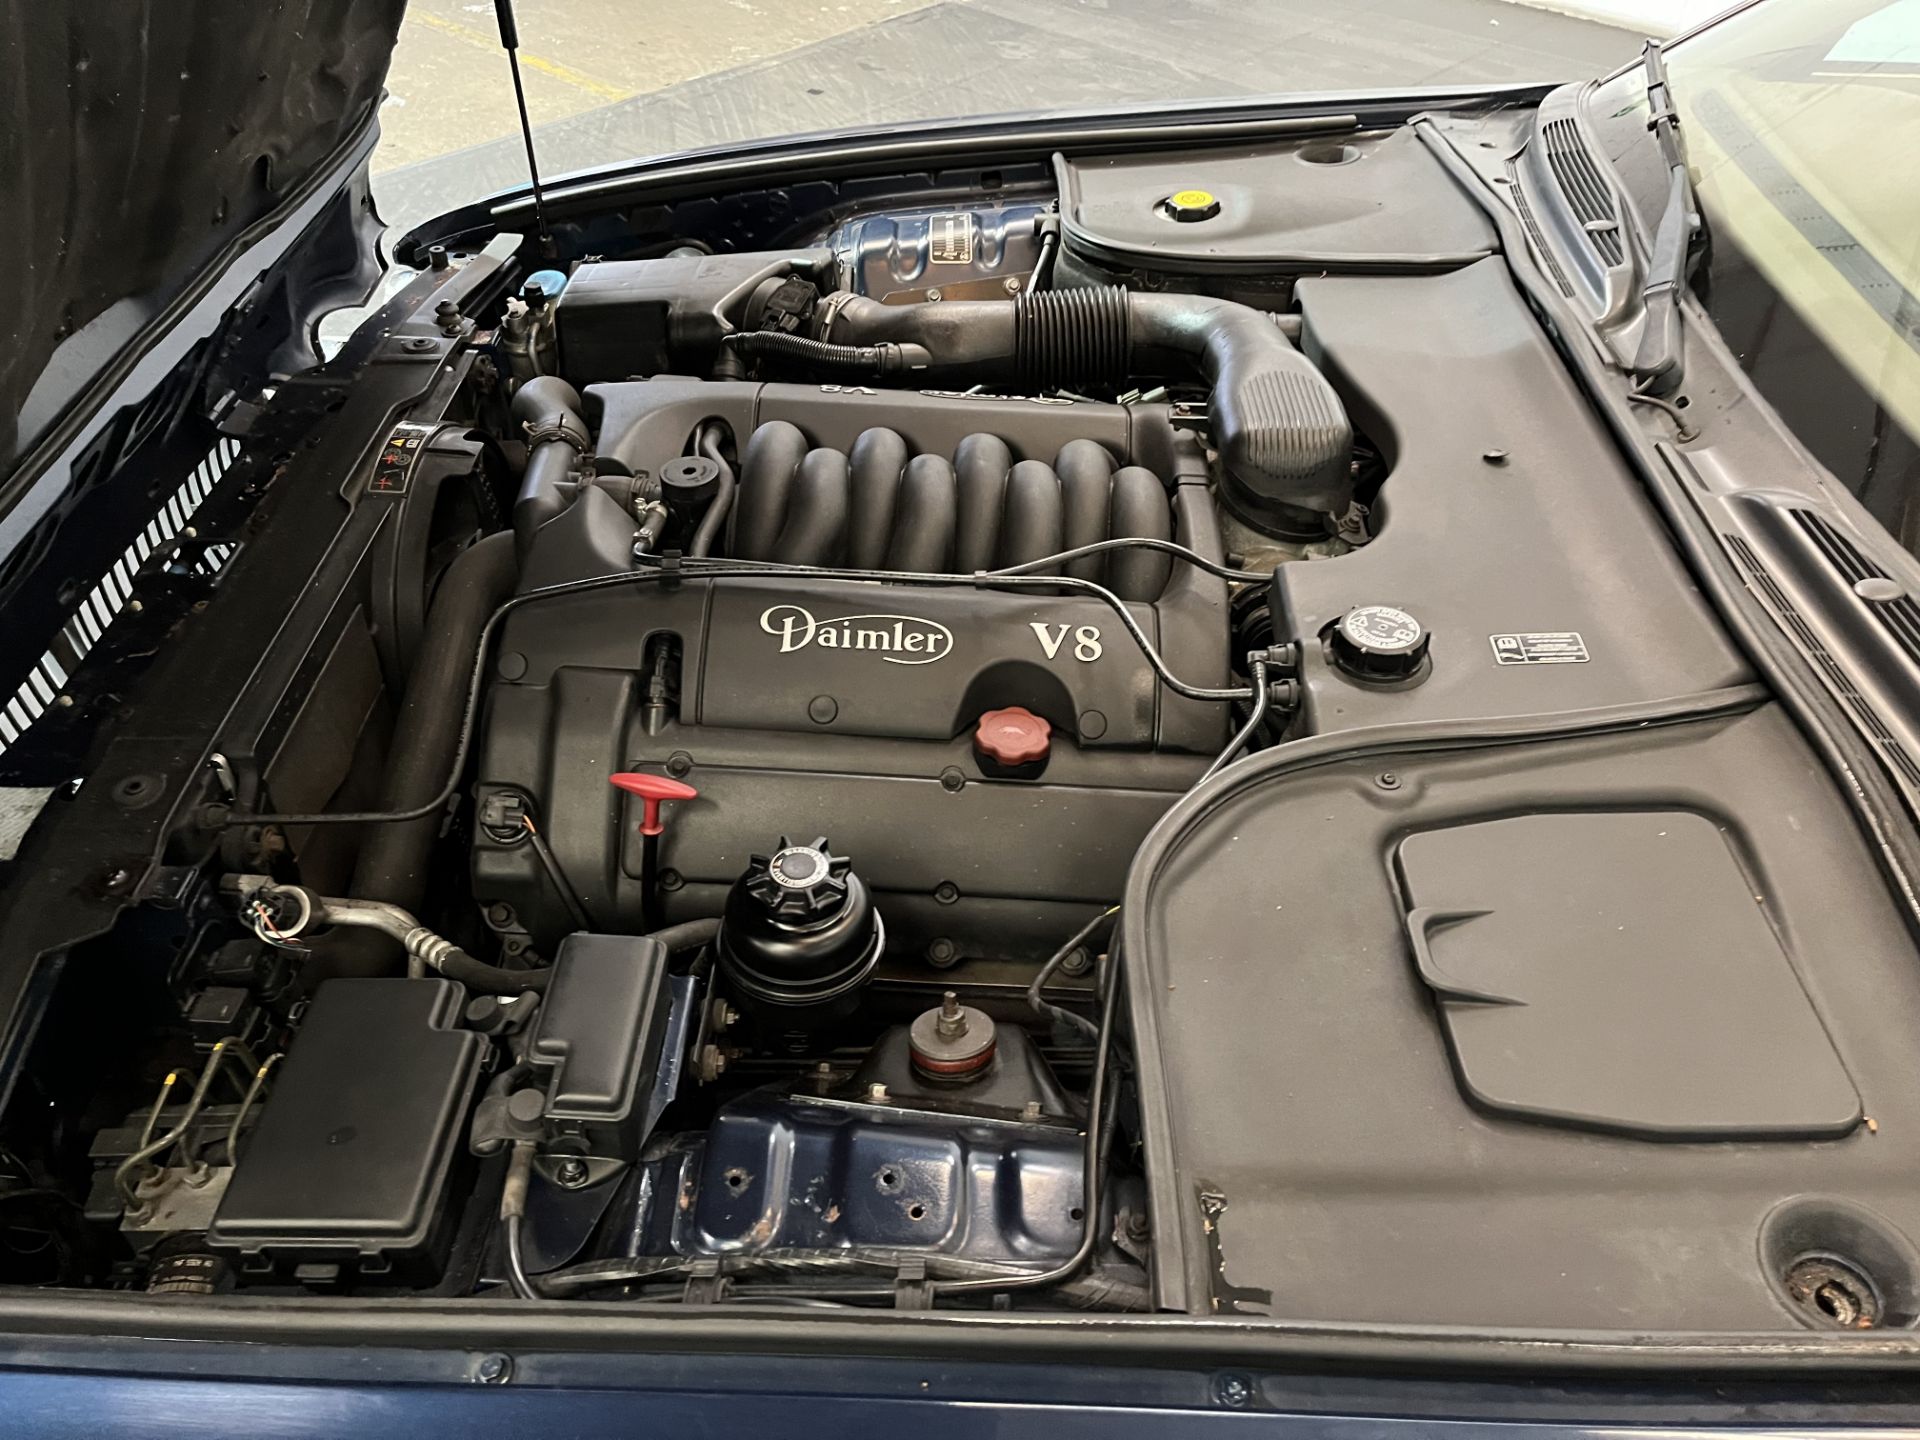 2001 Daimler V8 Auto - 3996cc - Image 16 of 21